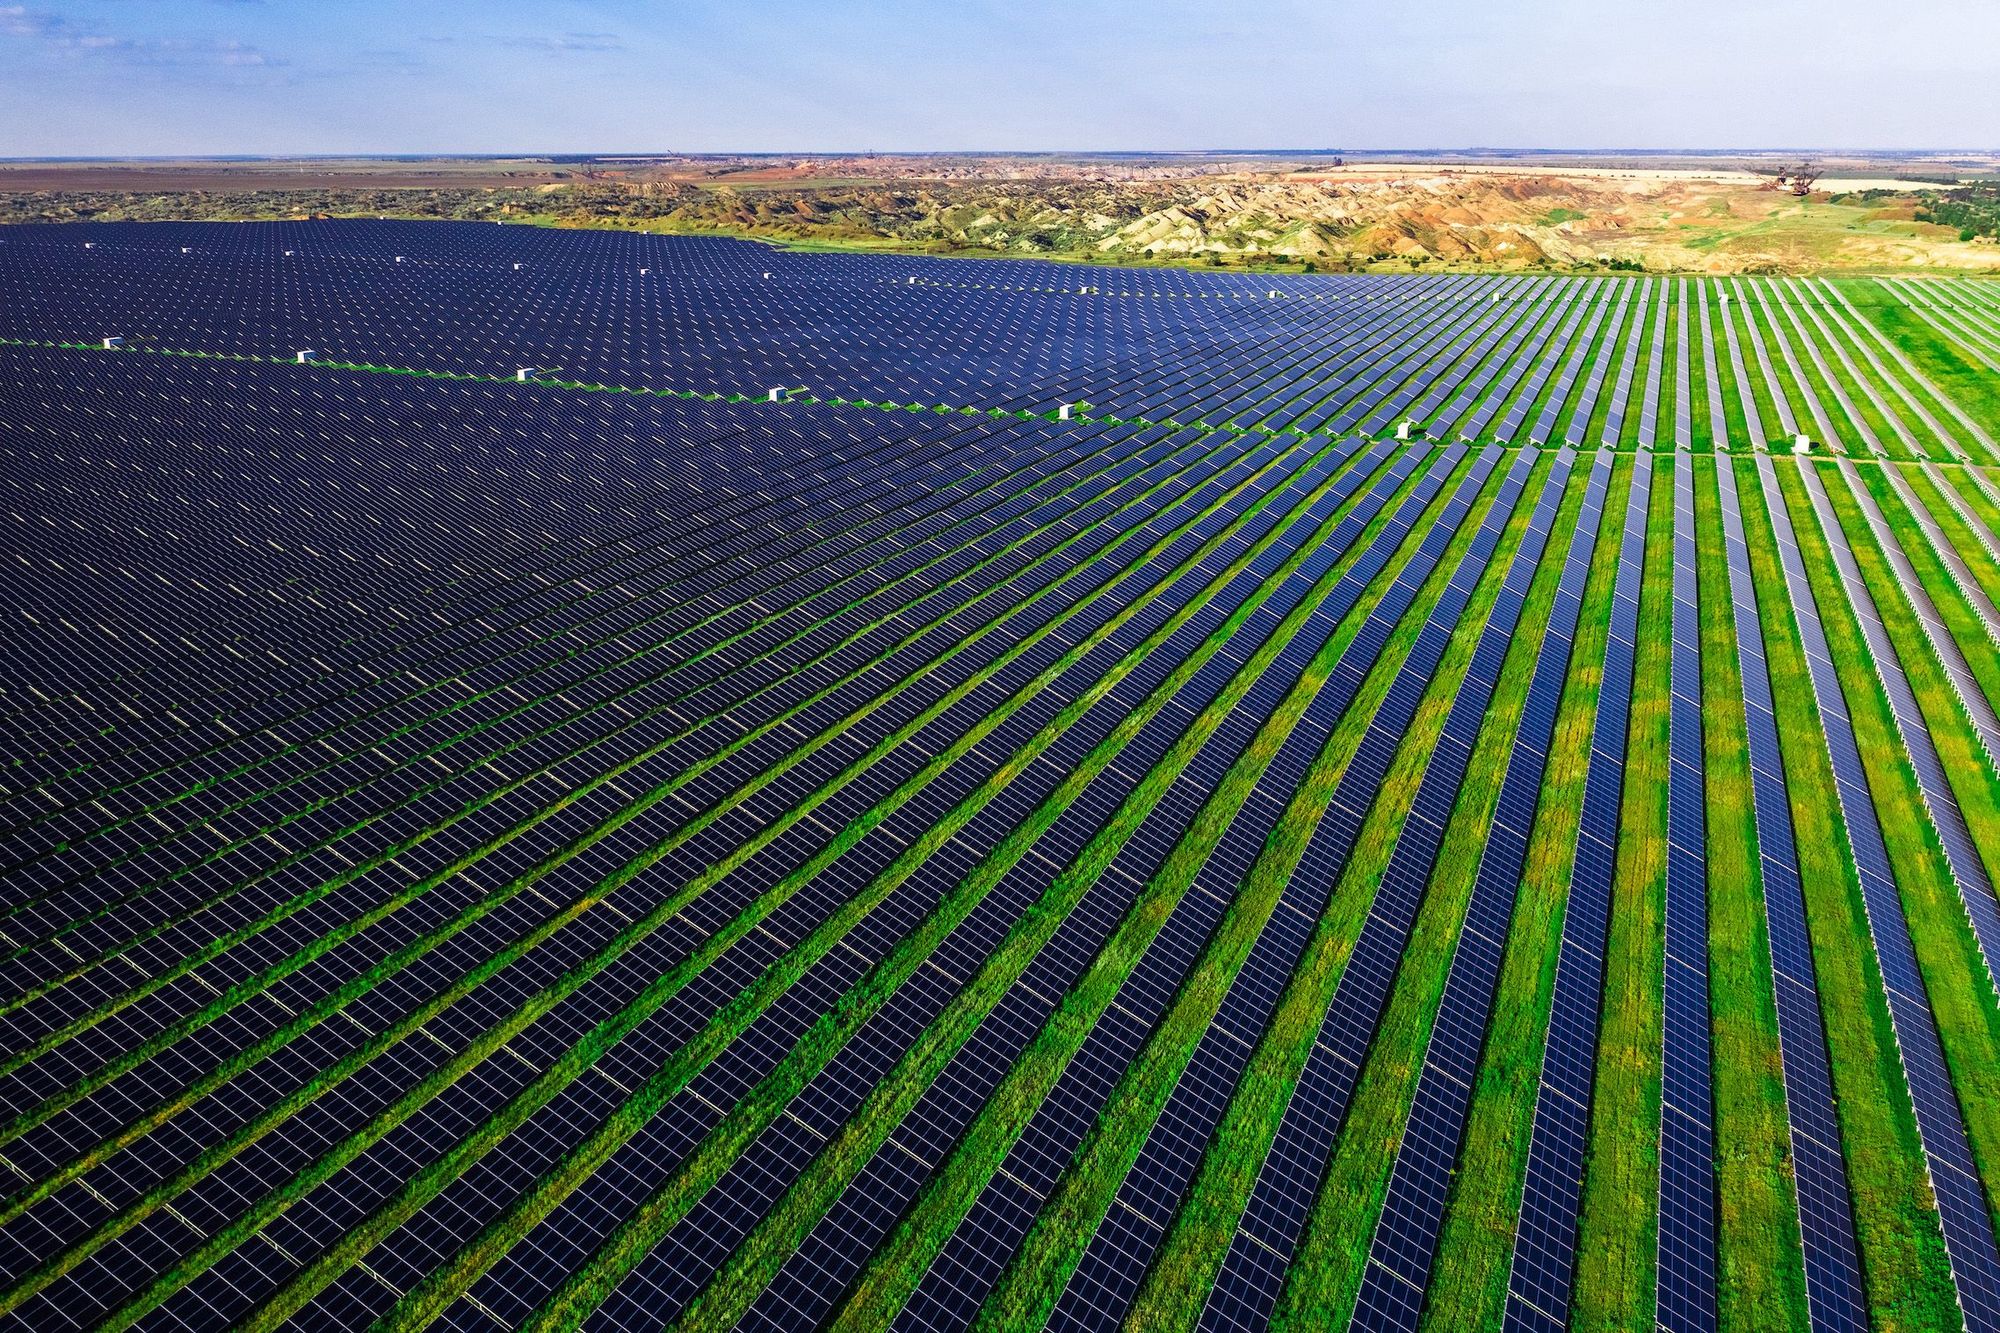 DTEK Solar Farm - Ukraine Innovating for the Future